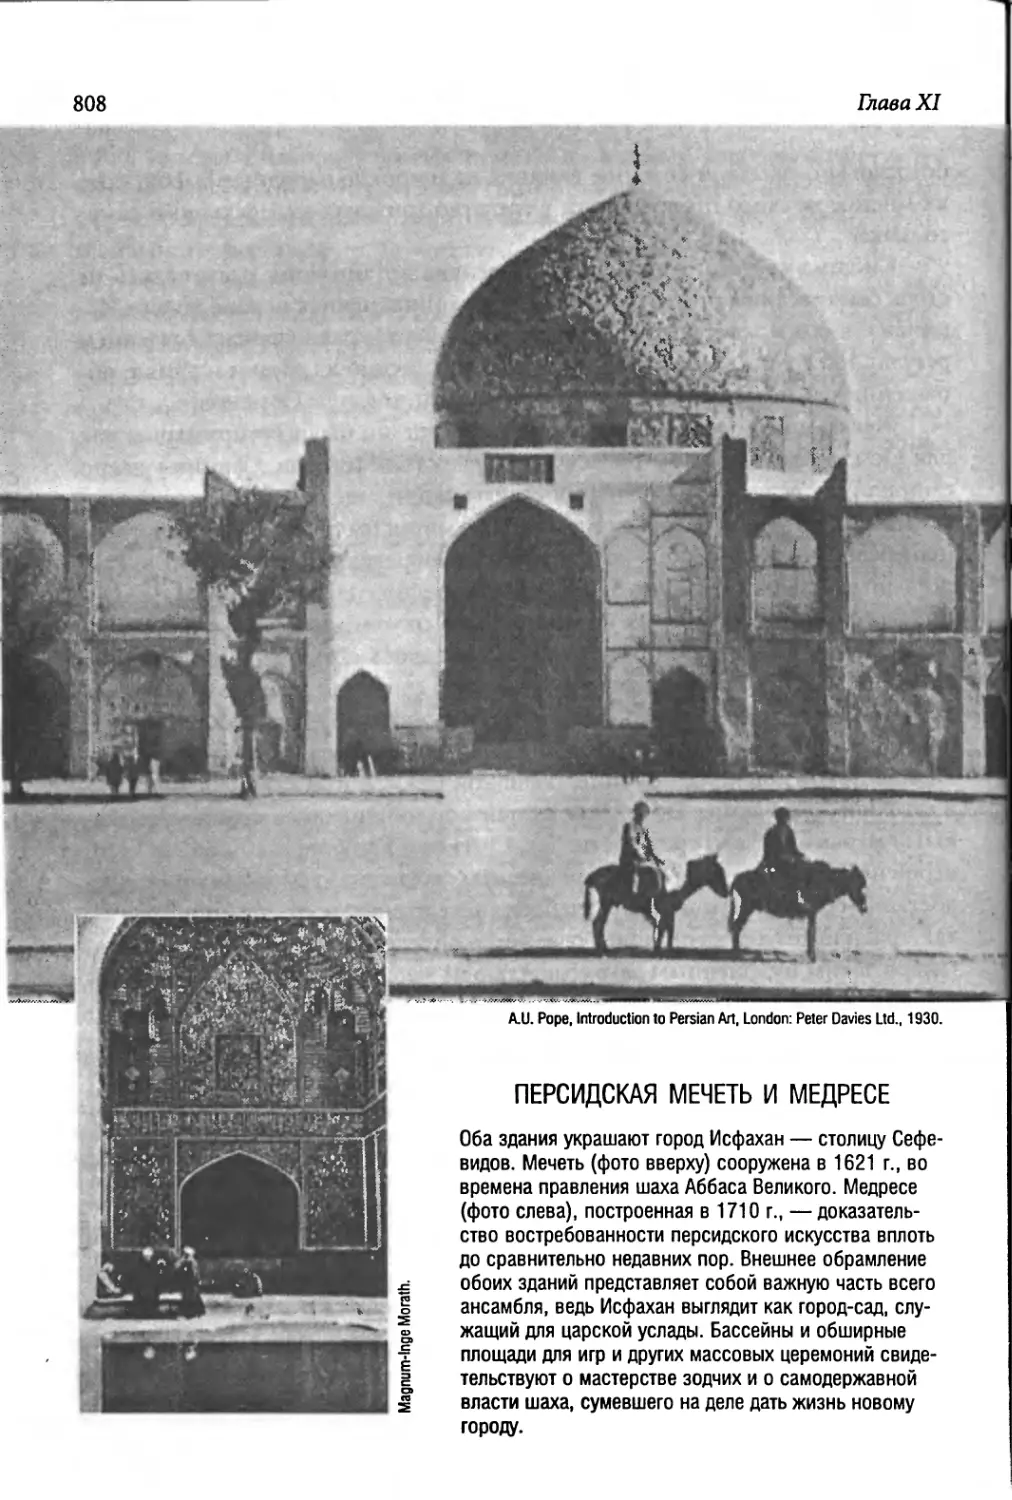 Персидская мечеть и медресе [808]